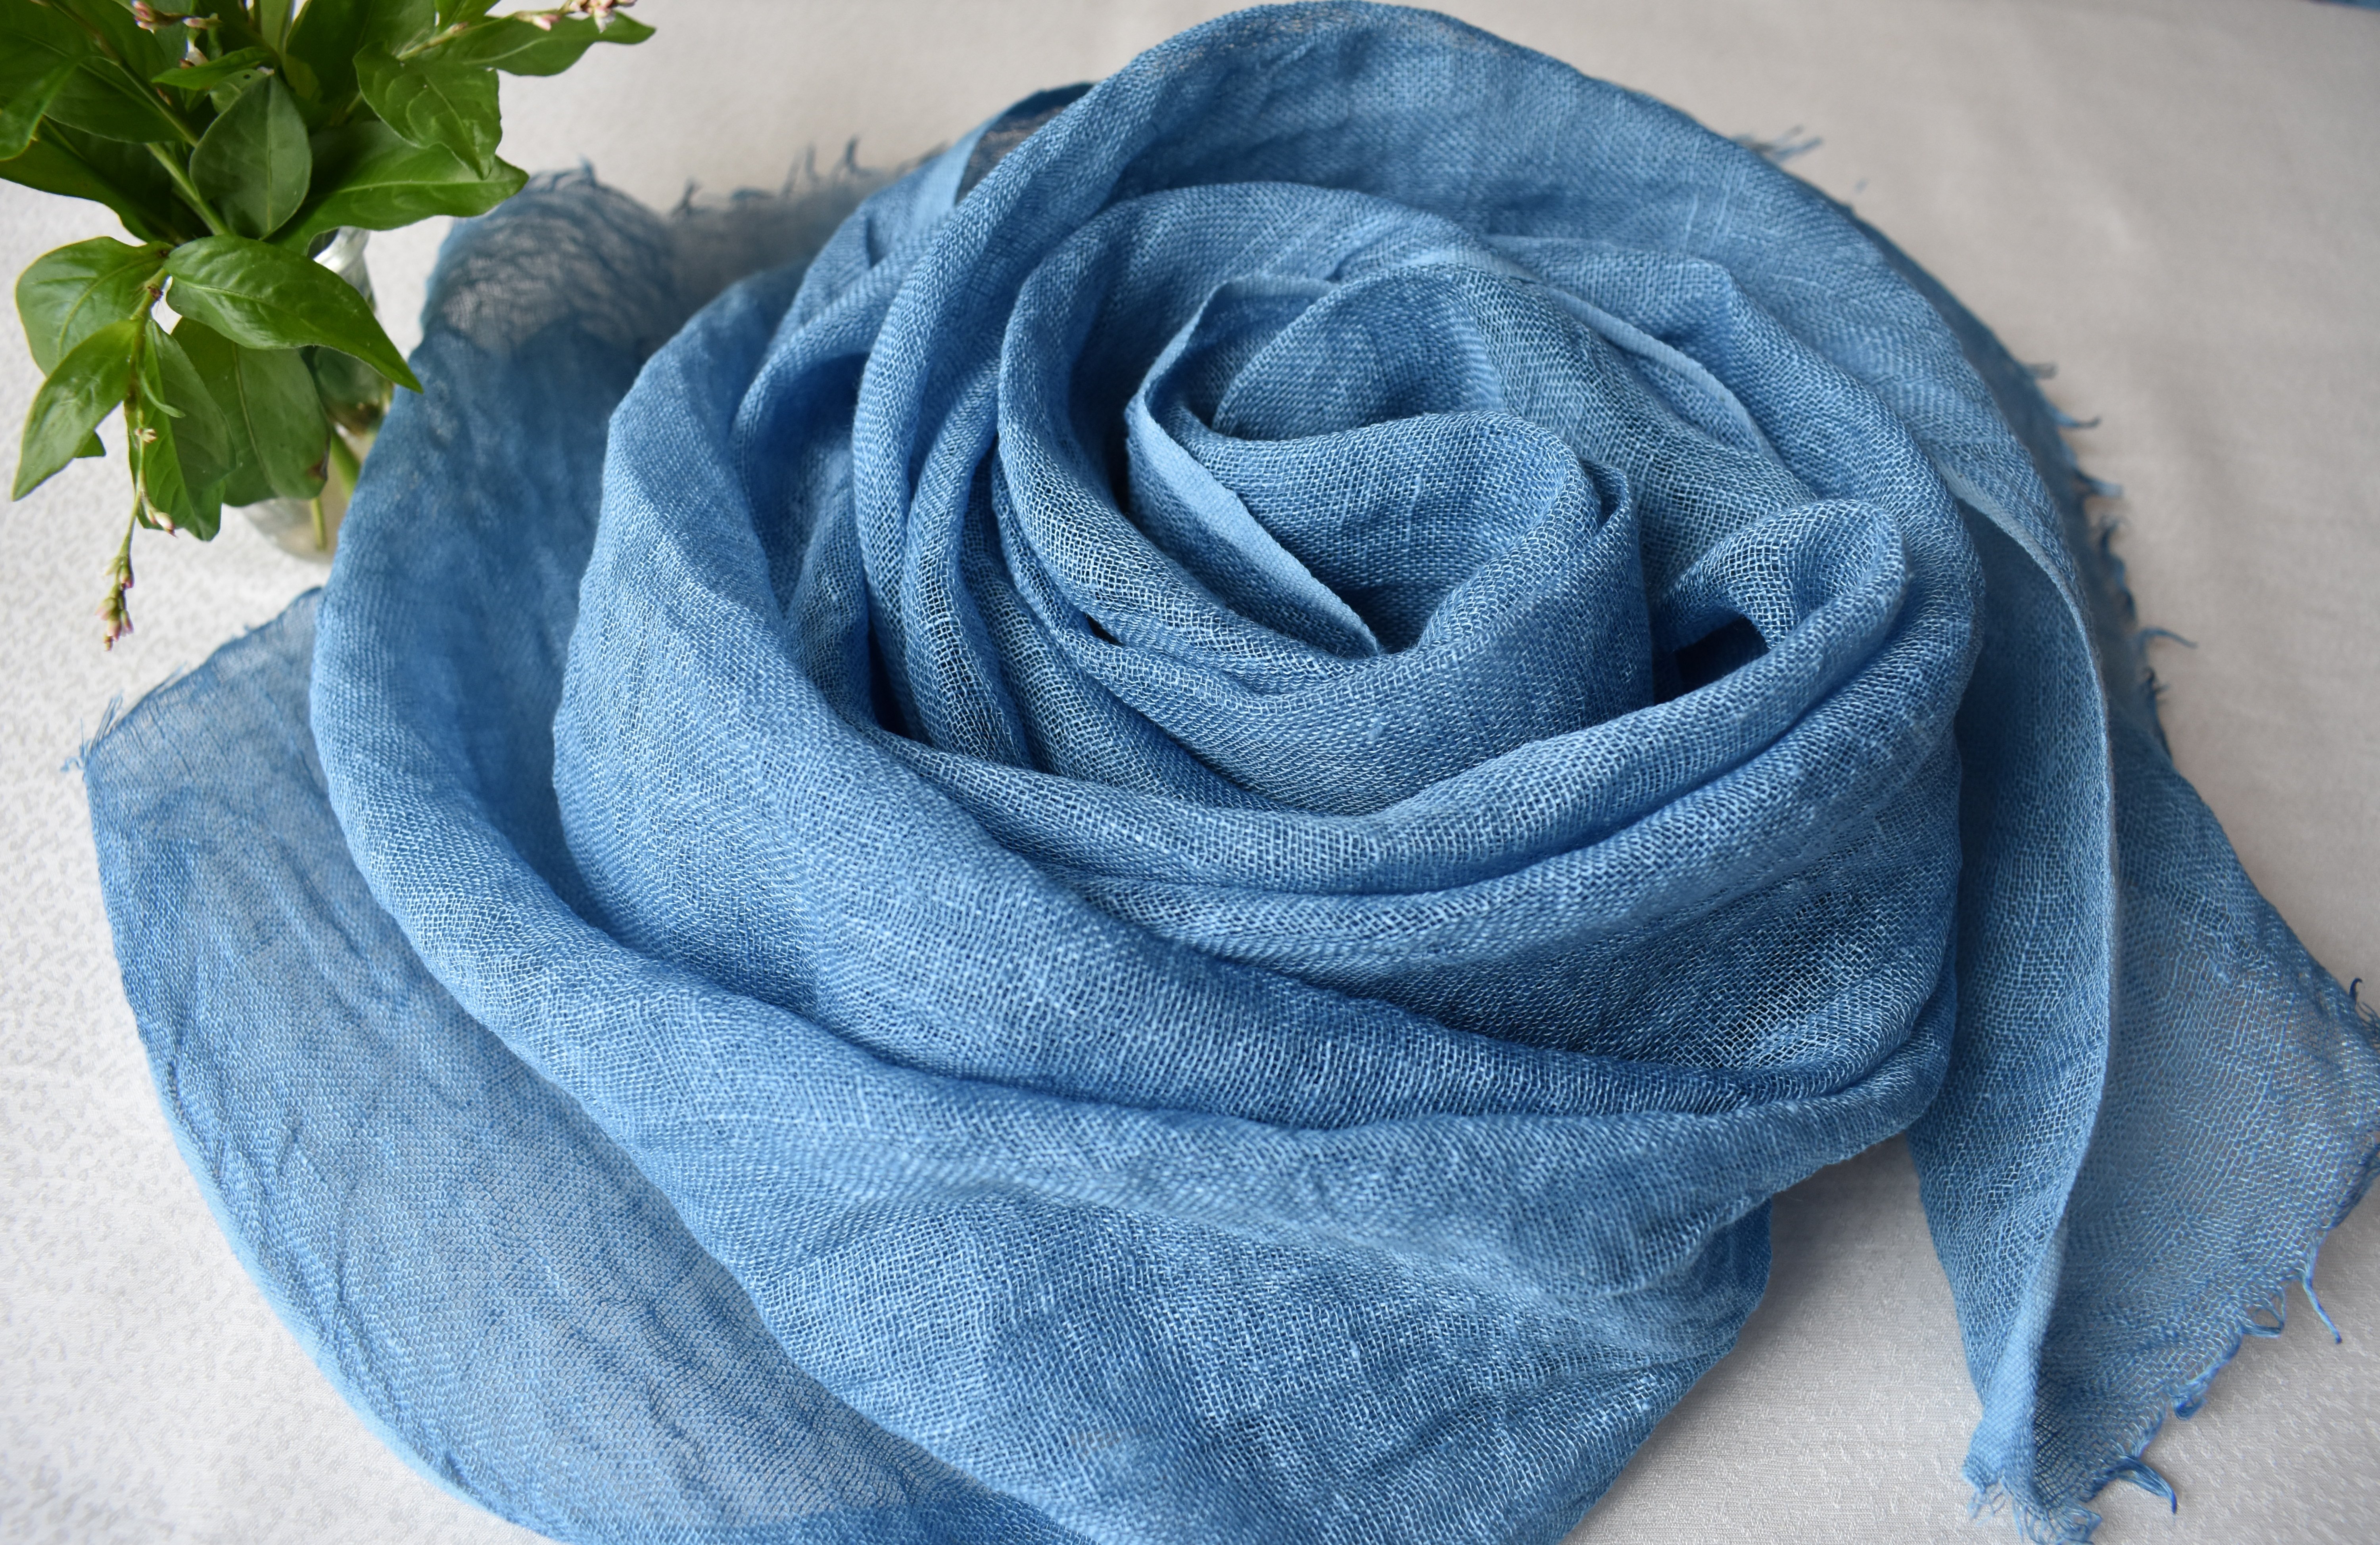 再出品 藍の生葉染め リネンストール 花染色 Iichi ハンドメイド クラフト作品 手仕事品の通販